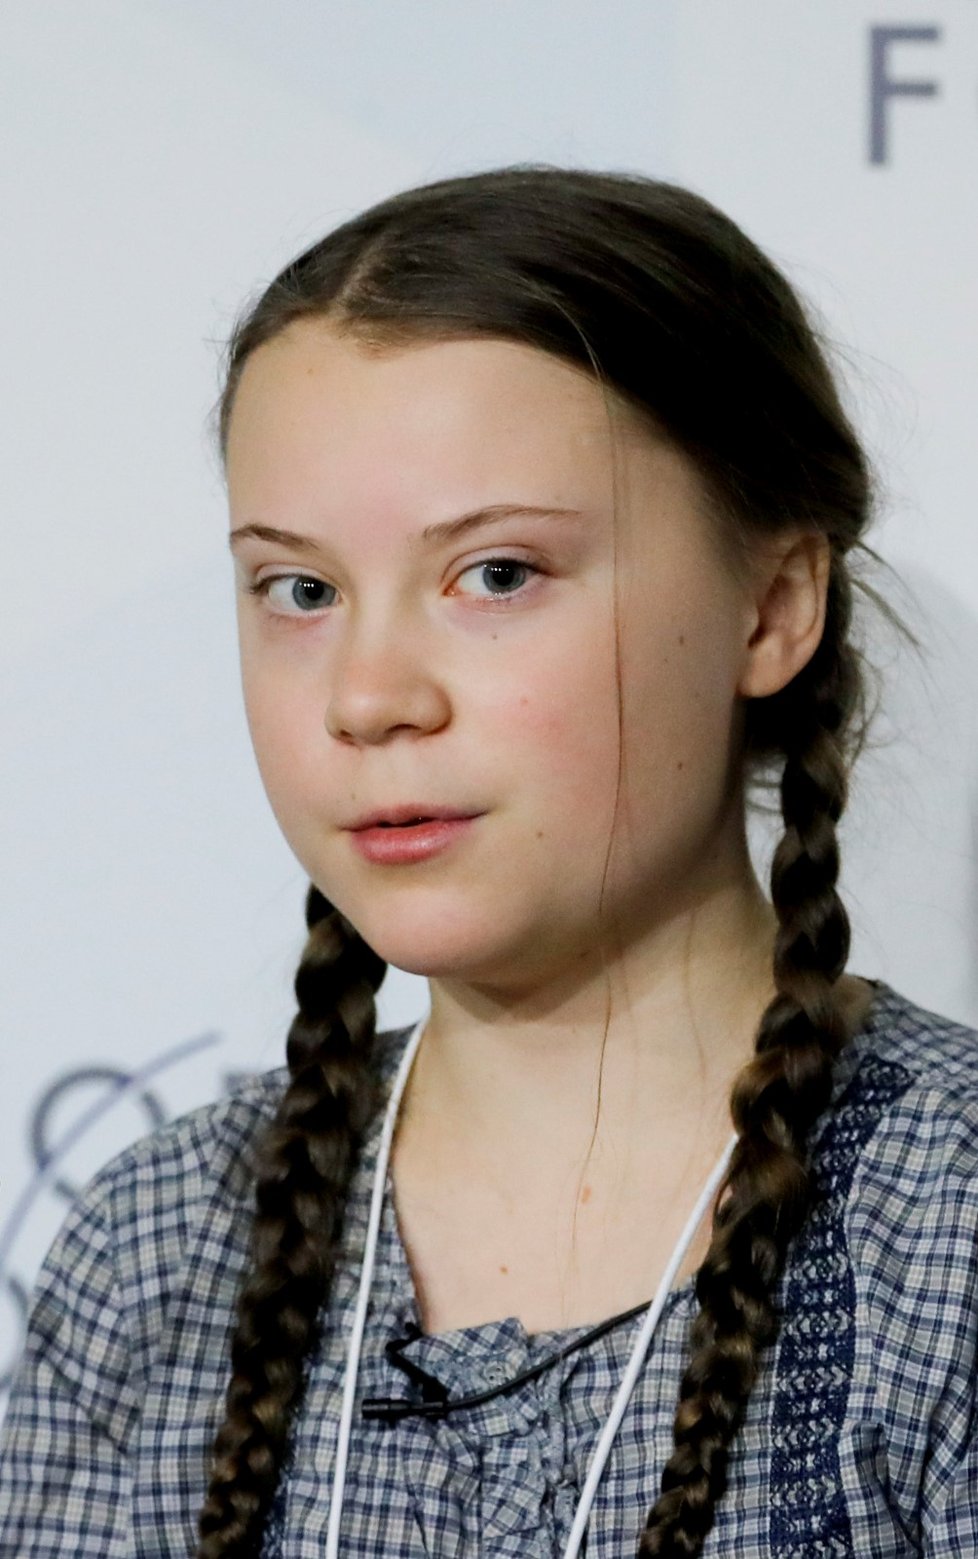 16letá švédská aktivistka Greta Thunbergová